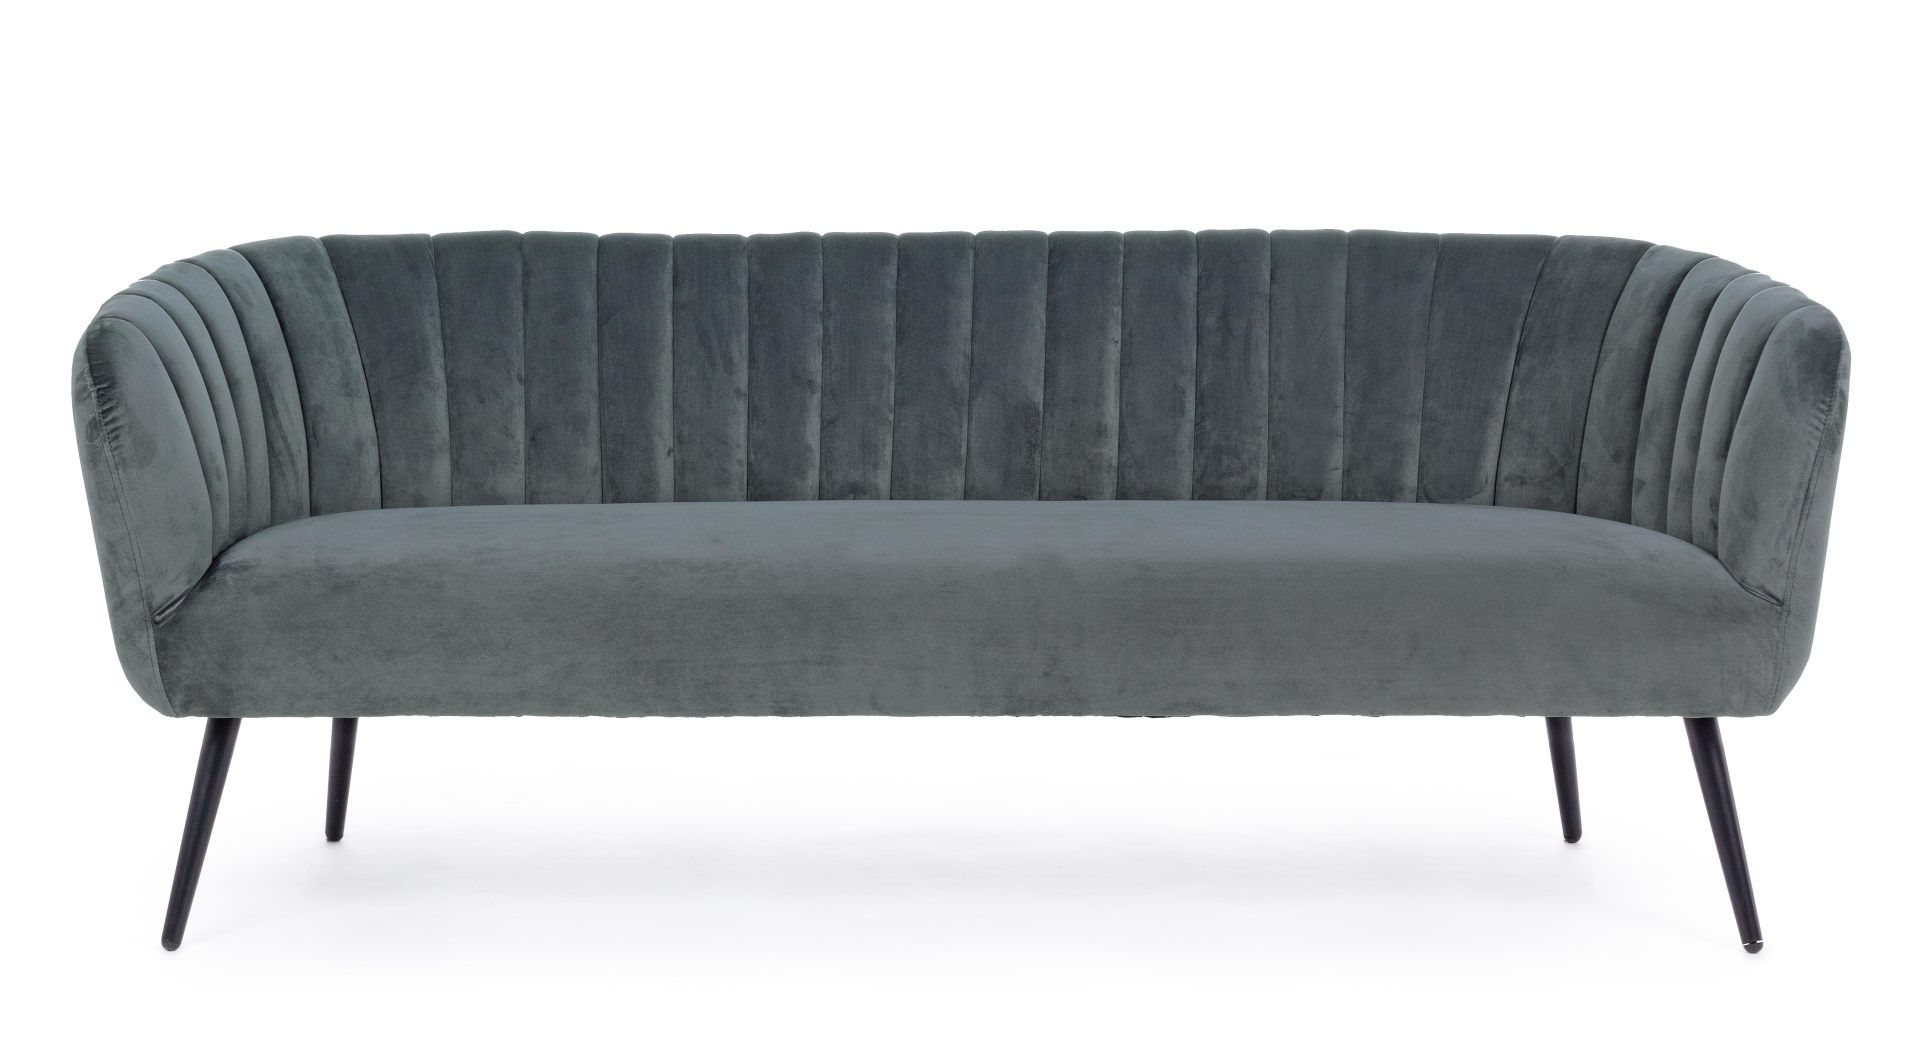 Das Sofa Avril überzeugt mit seinem modernen Design. Gefertigt wurde es aus Stoff in Samt-Optik, welcher einen grauen Farbton besitzt. Das Gestell ist aus Metall und hat eine schwarze Farbe. Das Sofa ist in der Ausführung als 3-Sitzer. Die Breite beträgt 